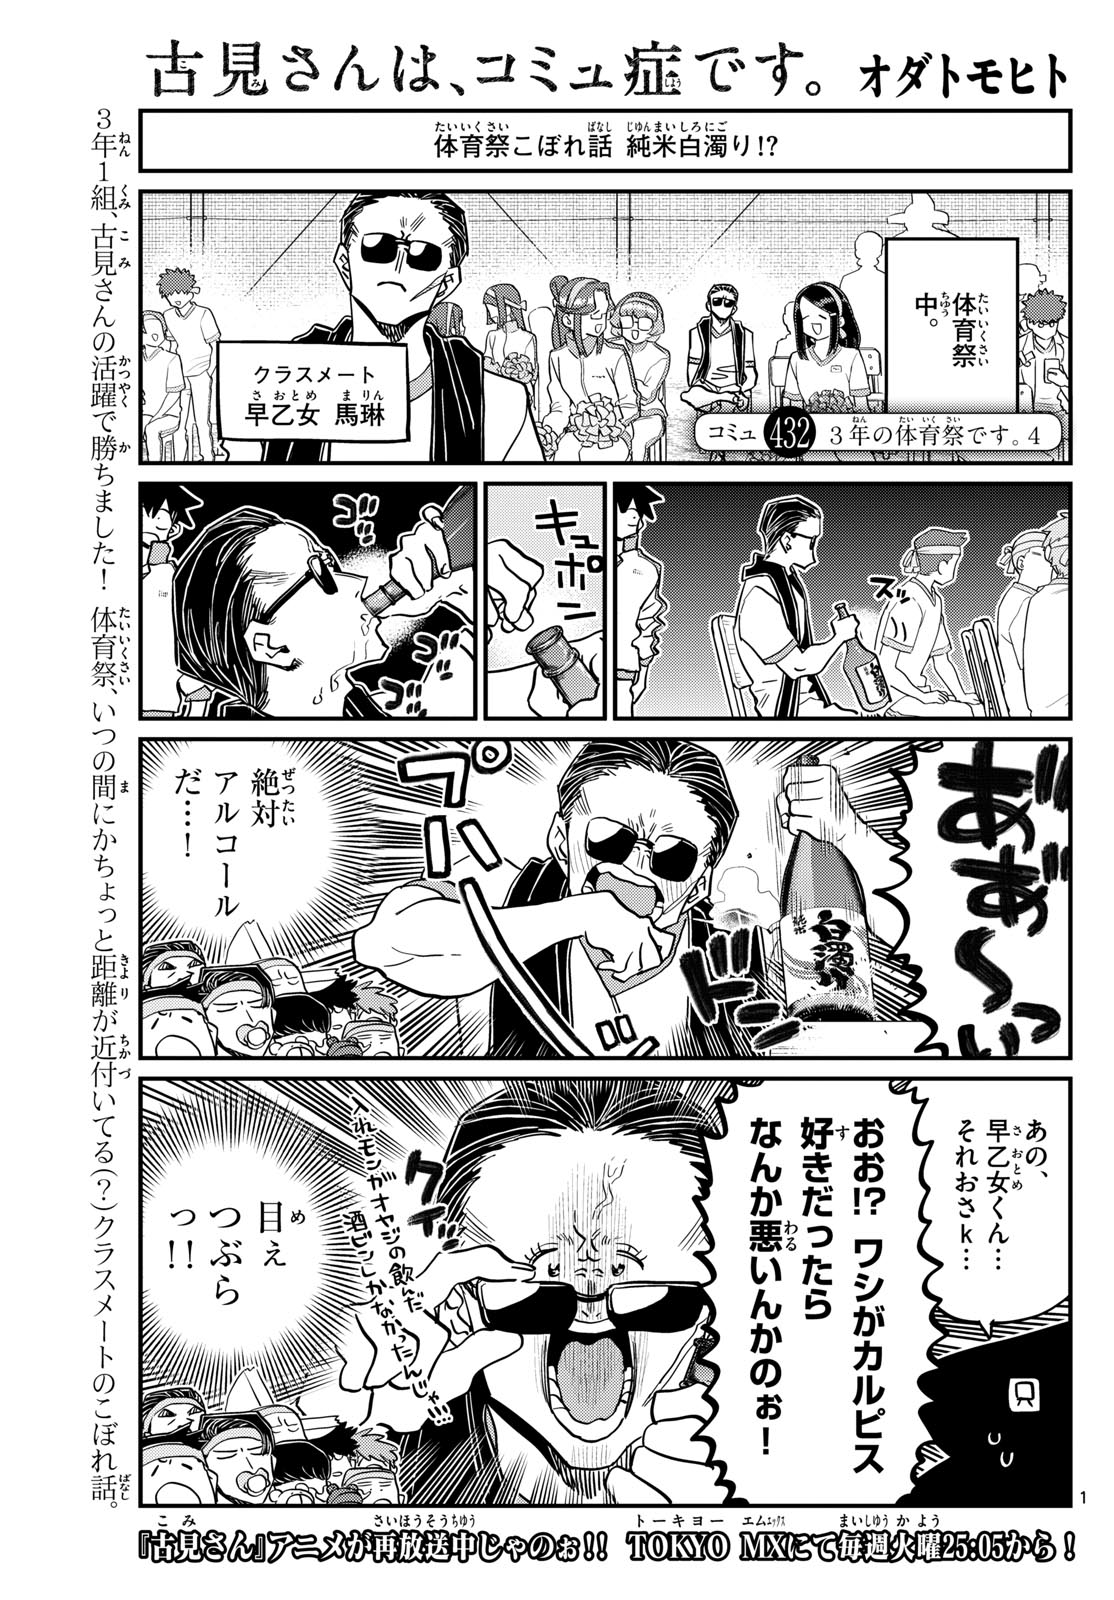 Komi-san wa Komyushou Desu - Chapter 432 - Page 1